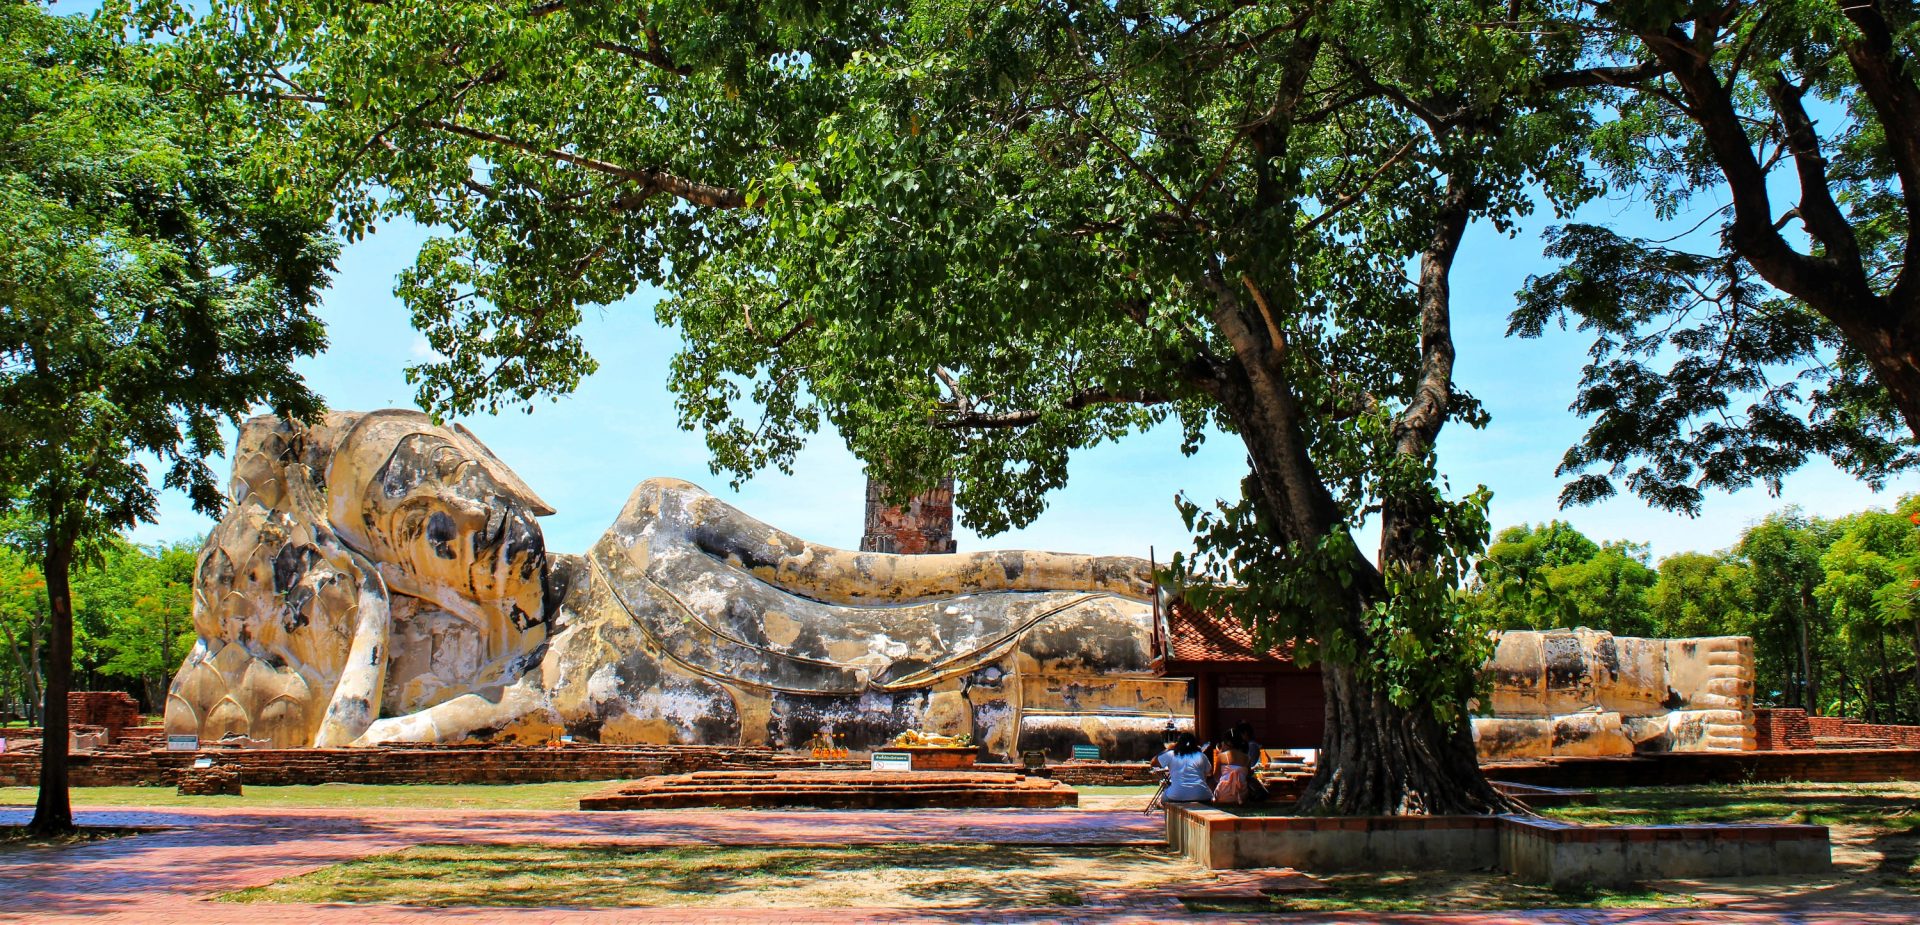 Ce grand Bouddha couché, en brique recouvert de plâtre, mesure 29 mètres de long se situe sur un site en plein air.